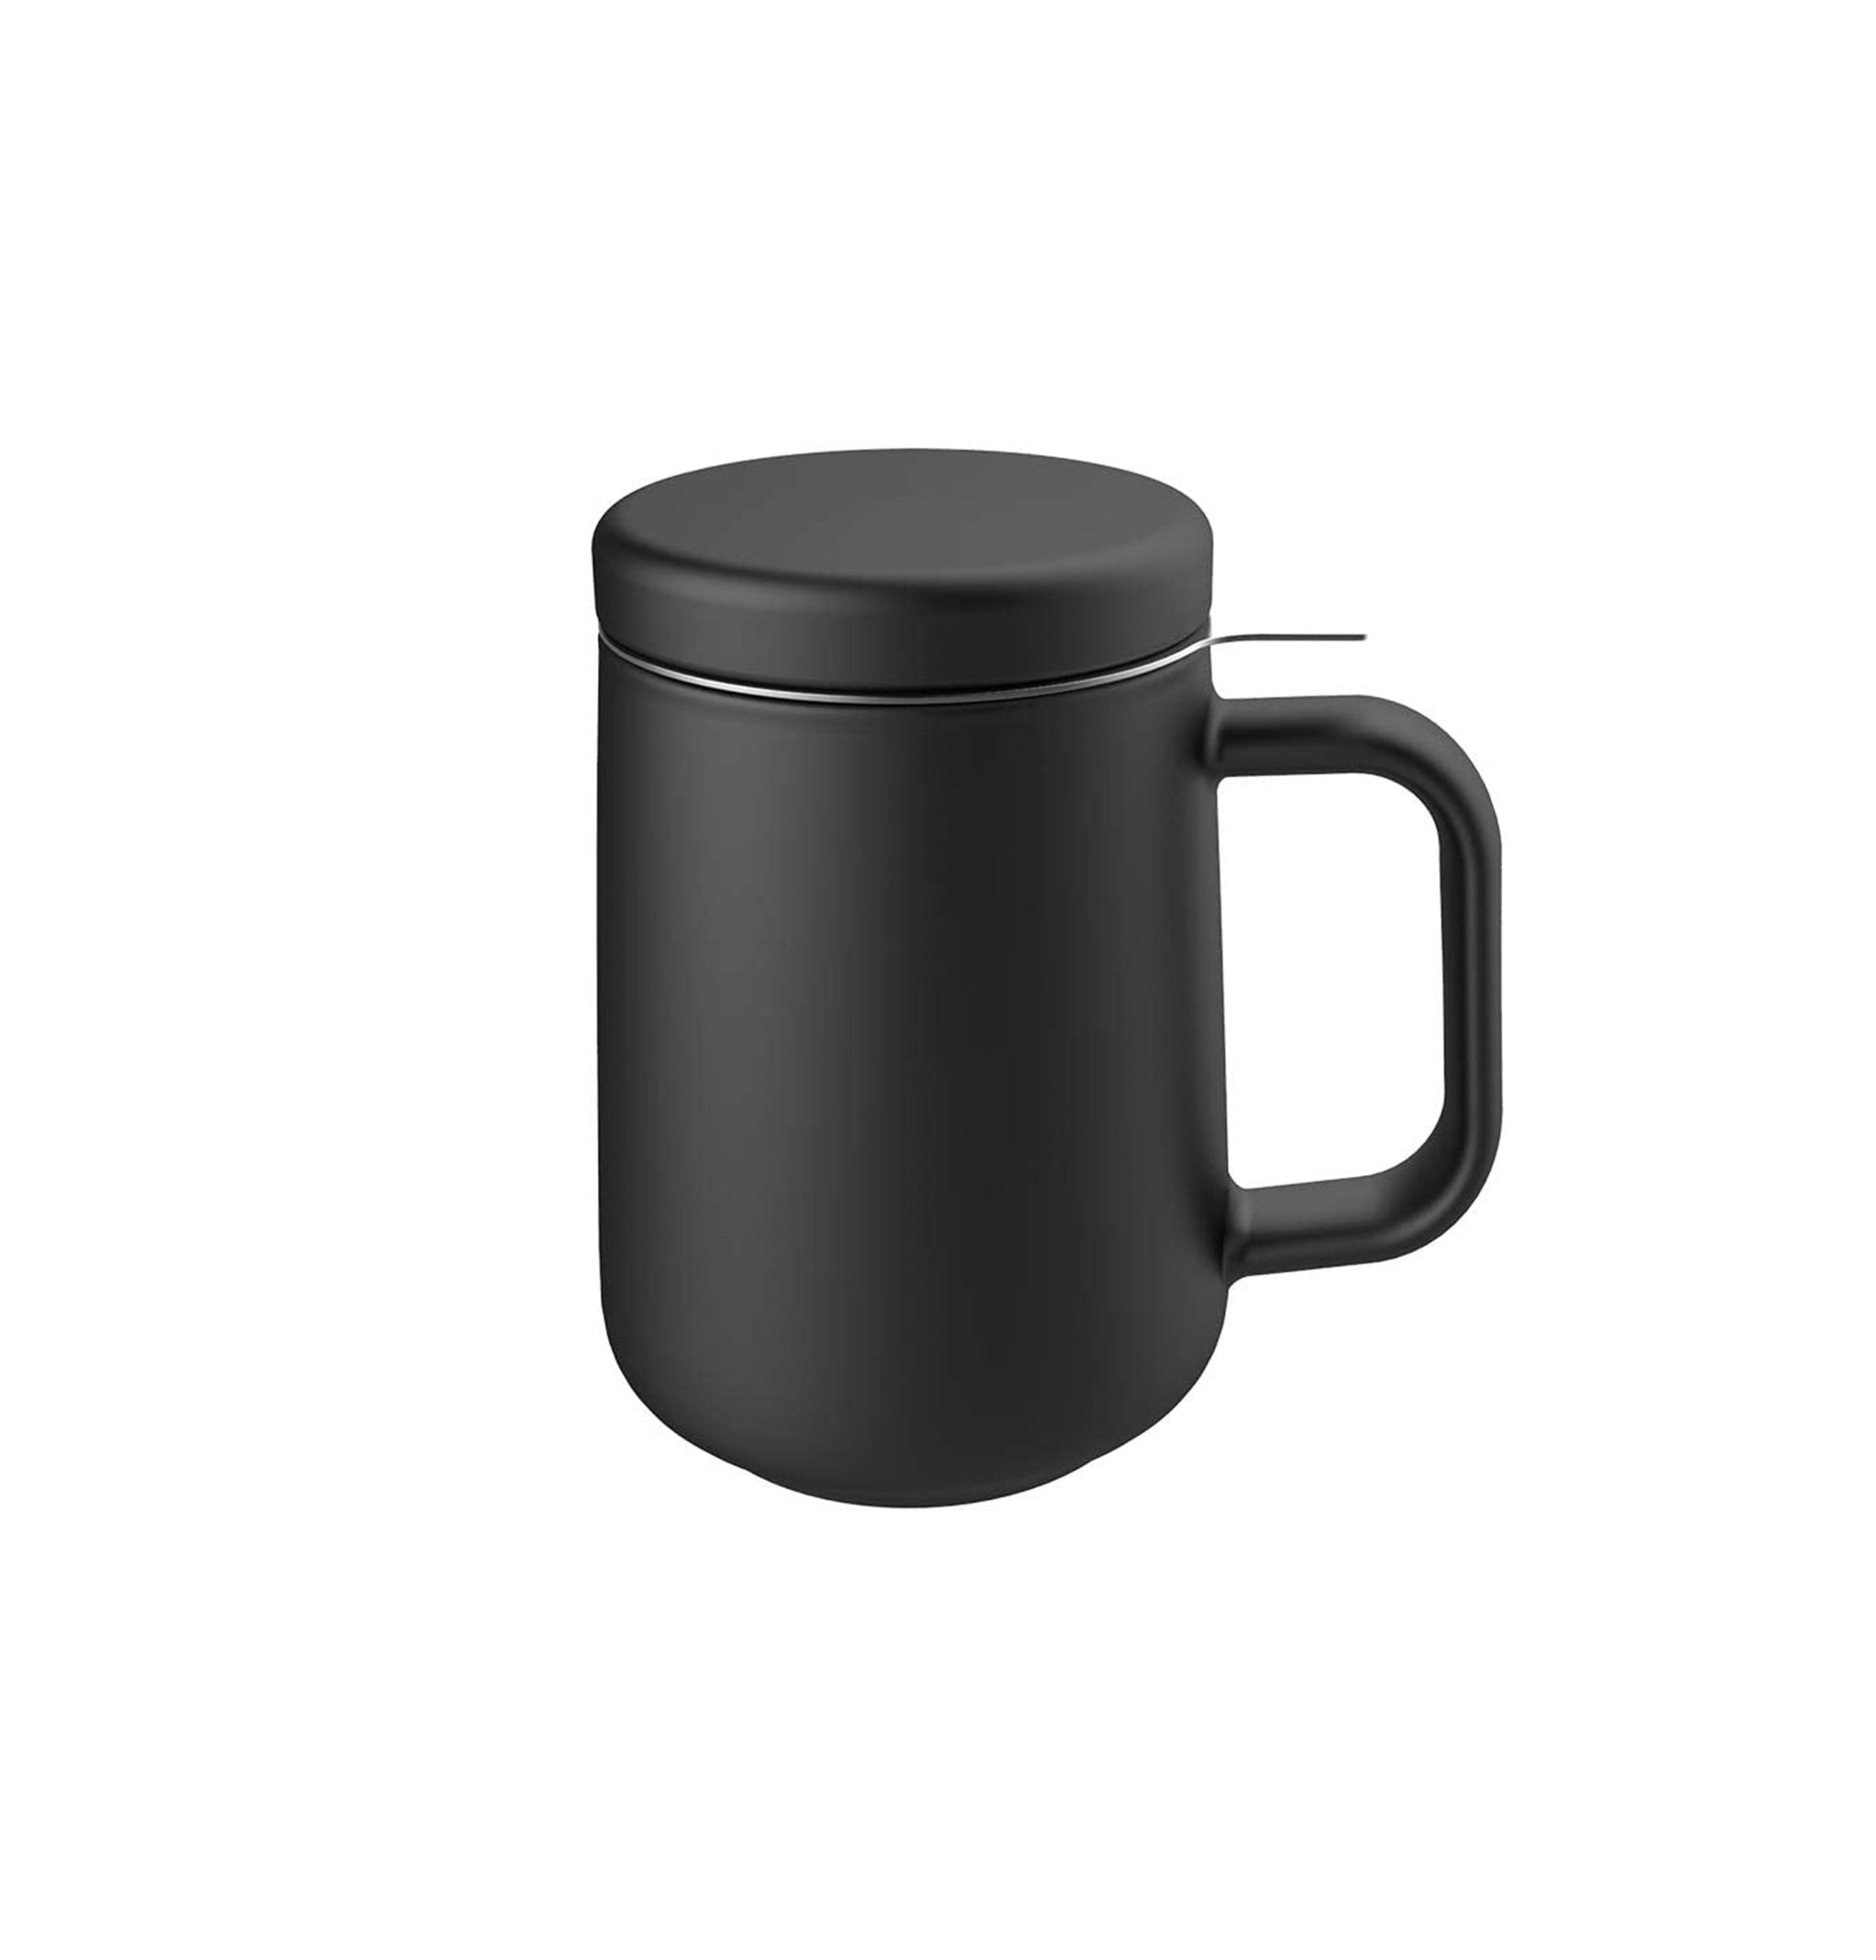 https://primeteashop.com/cdn/shop/products/Porcelain-Tea-Mug_black_2048x2048.jpg?v=1692561280